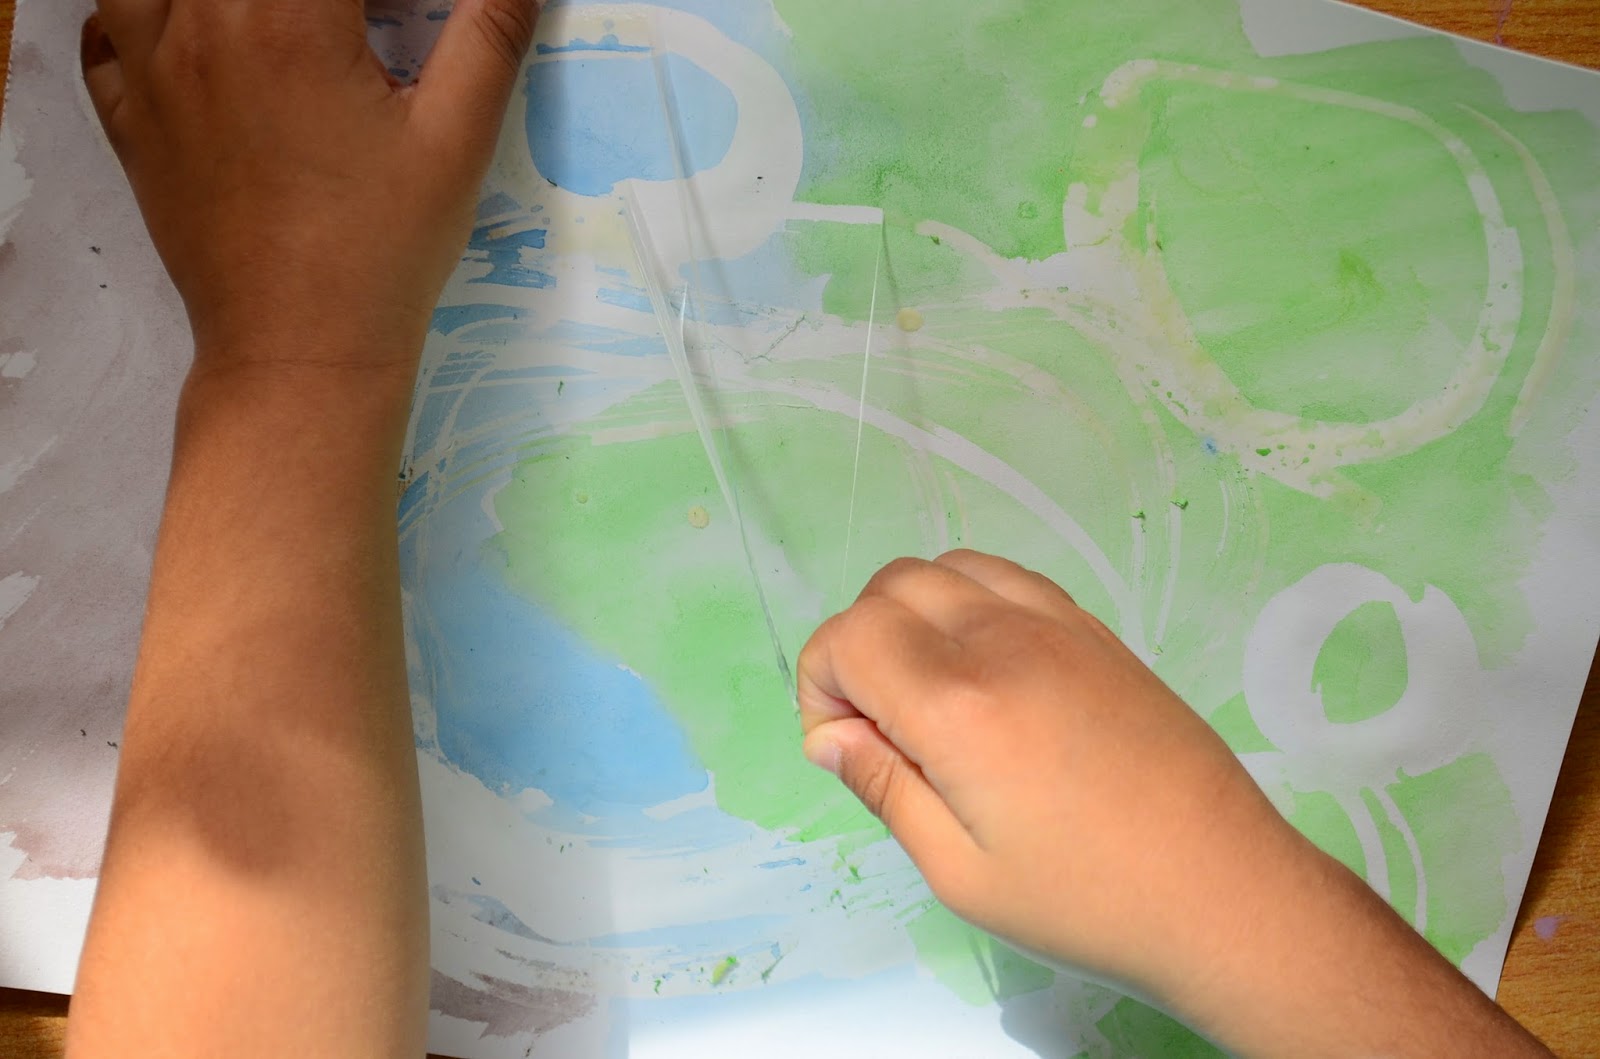 Preschooler Art With Watercolor Masking Fluid